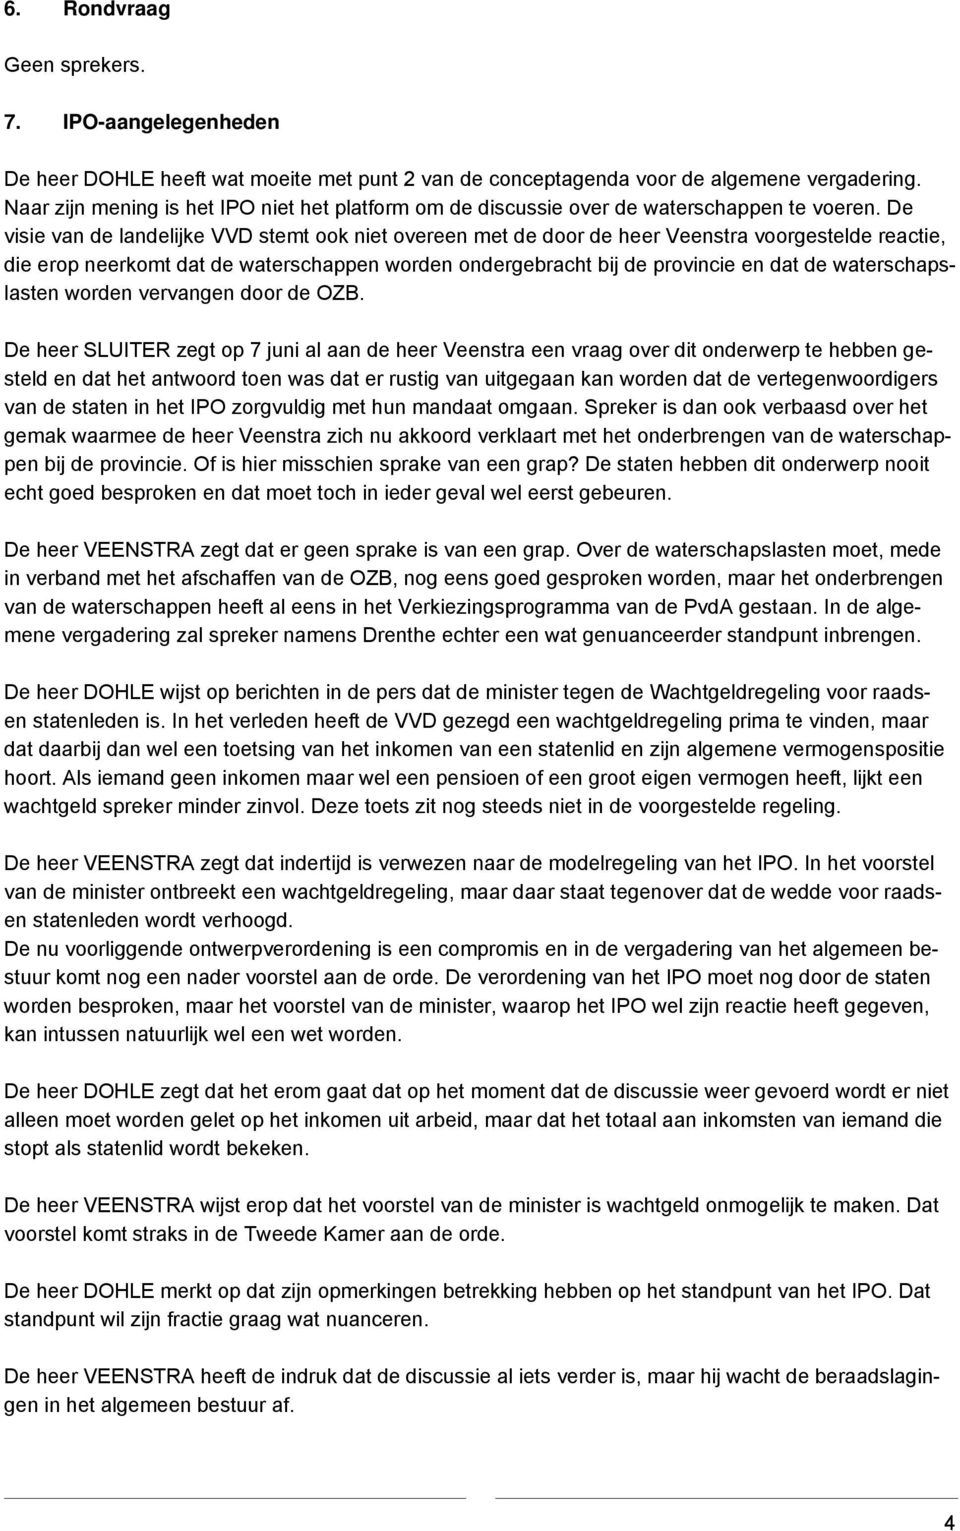 De visie van de landelijke VVD stemt ook niet overeen met de door de heer Veenstra voorgestelde reactie, die erop neerkomt dat de waterschappen worden ondergebracht bij de provincie en dat de